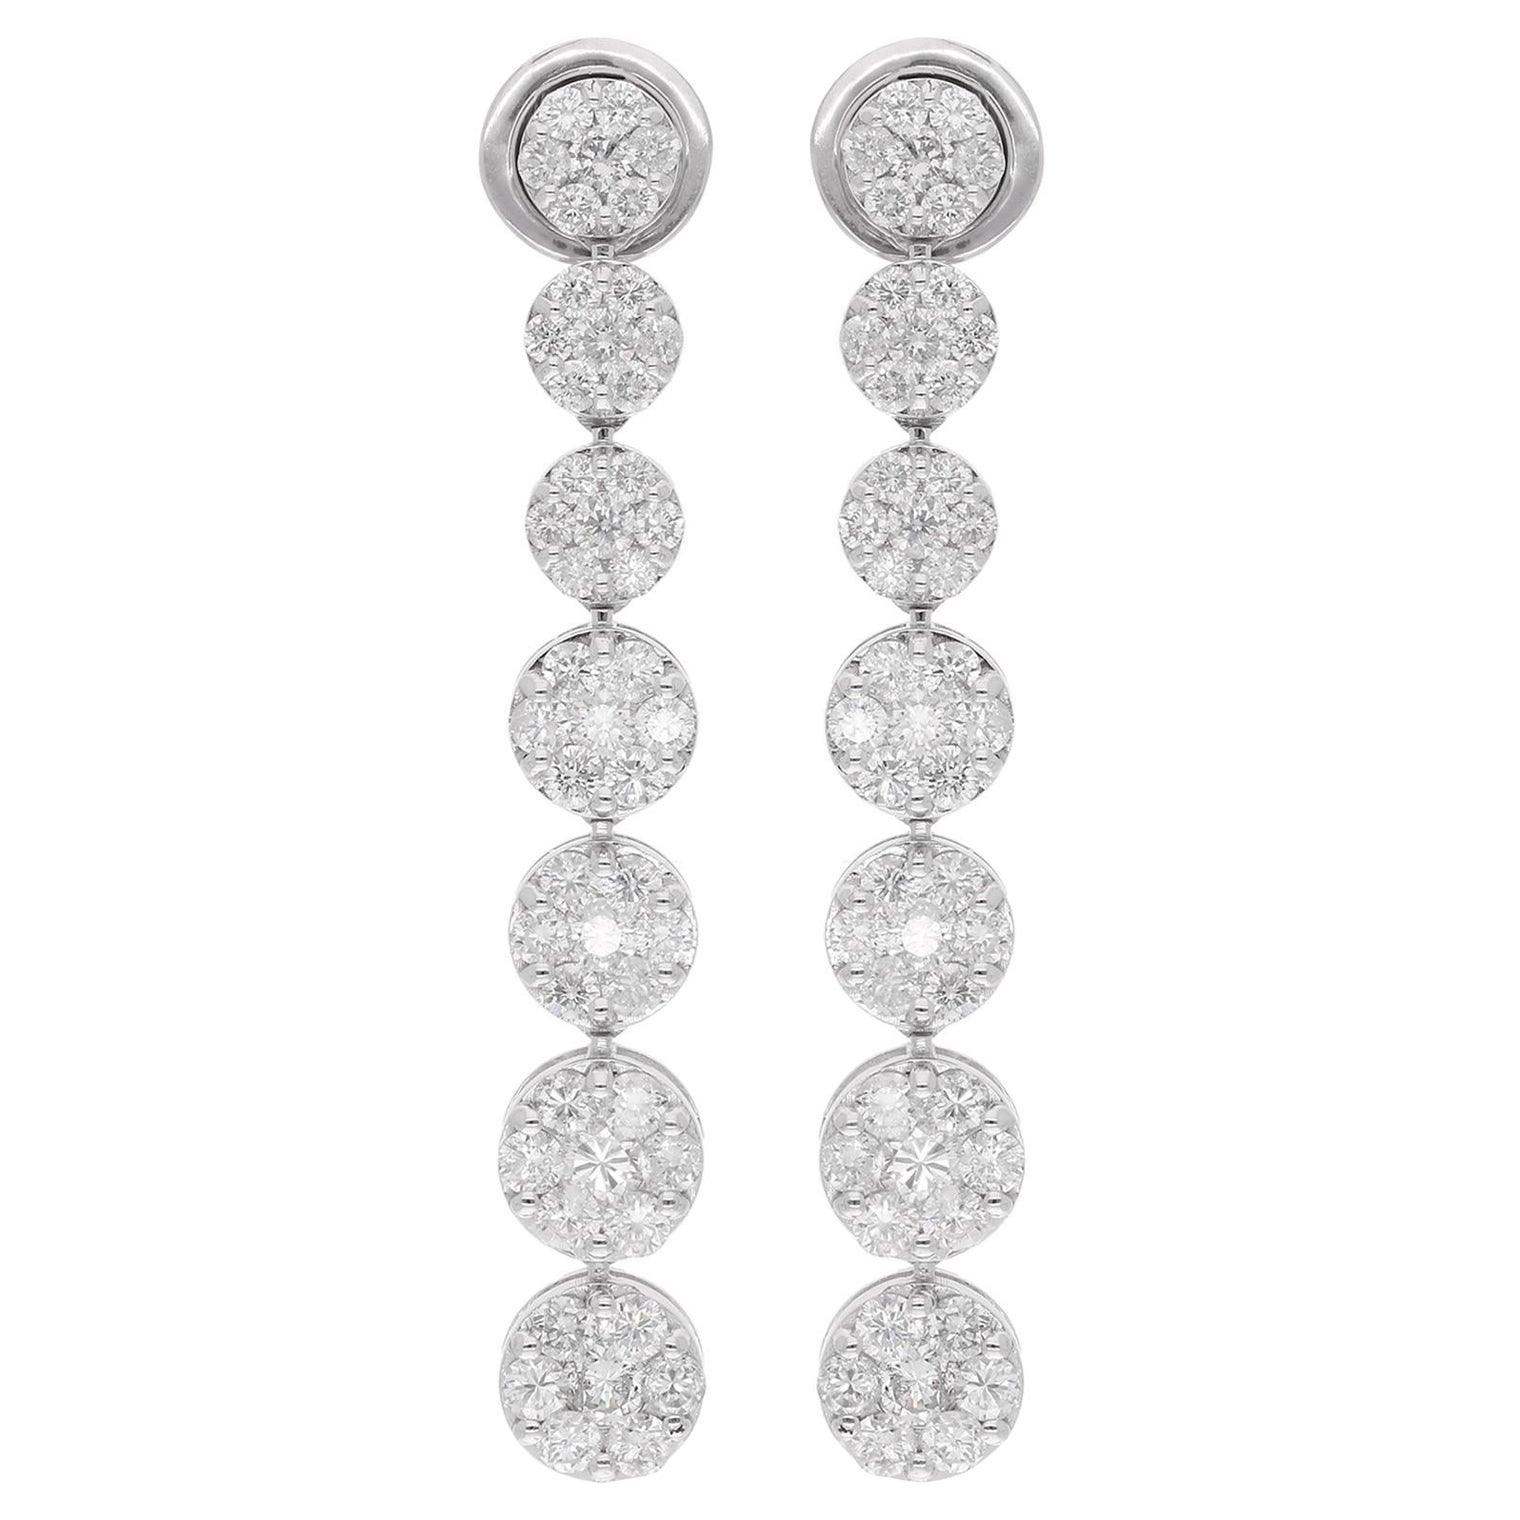 Longues boucles d'oreilles pendantes en or blanc 18 carats avec diamants pavés de 3,2 carats, fabrication artisanale